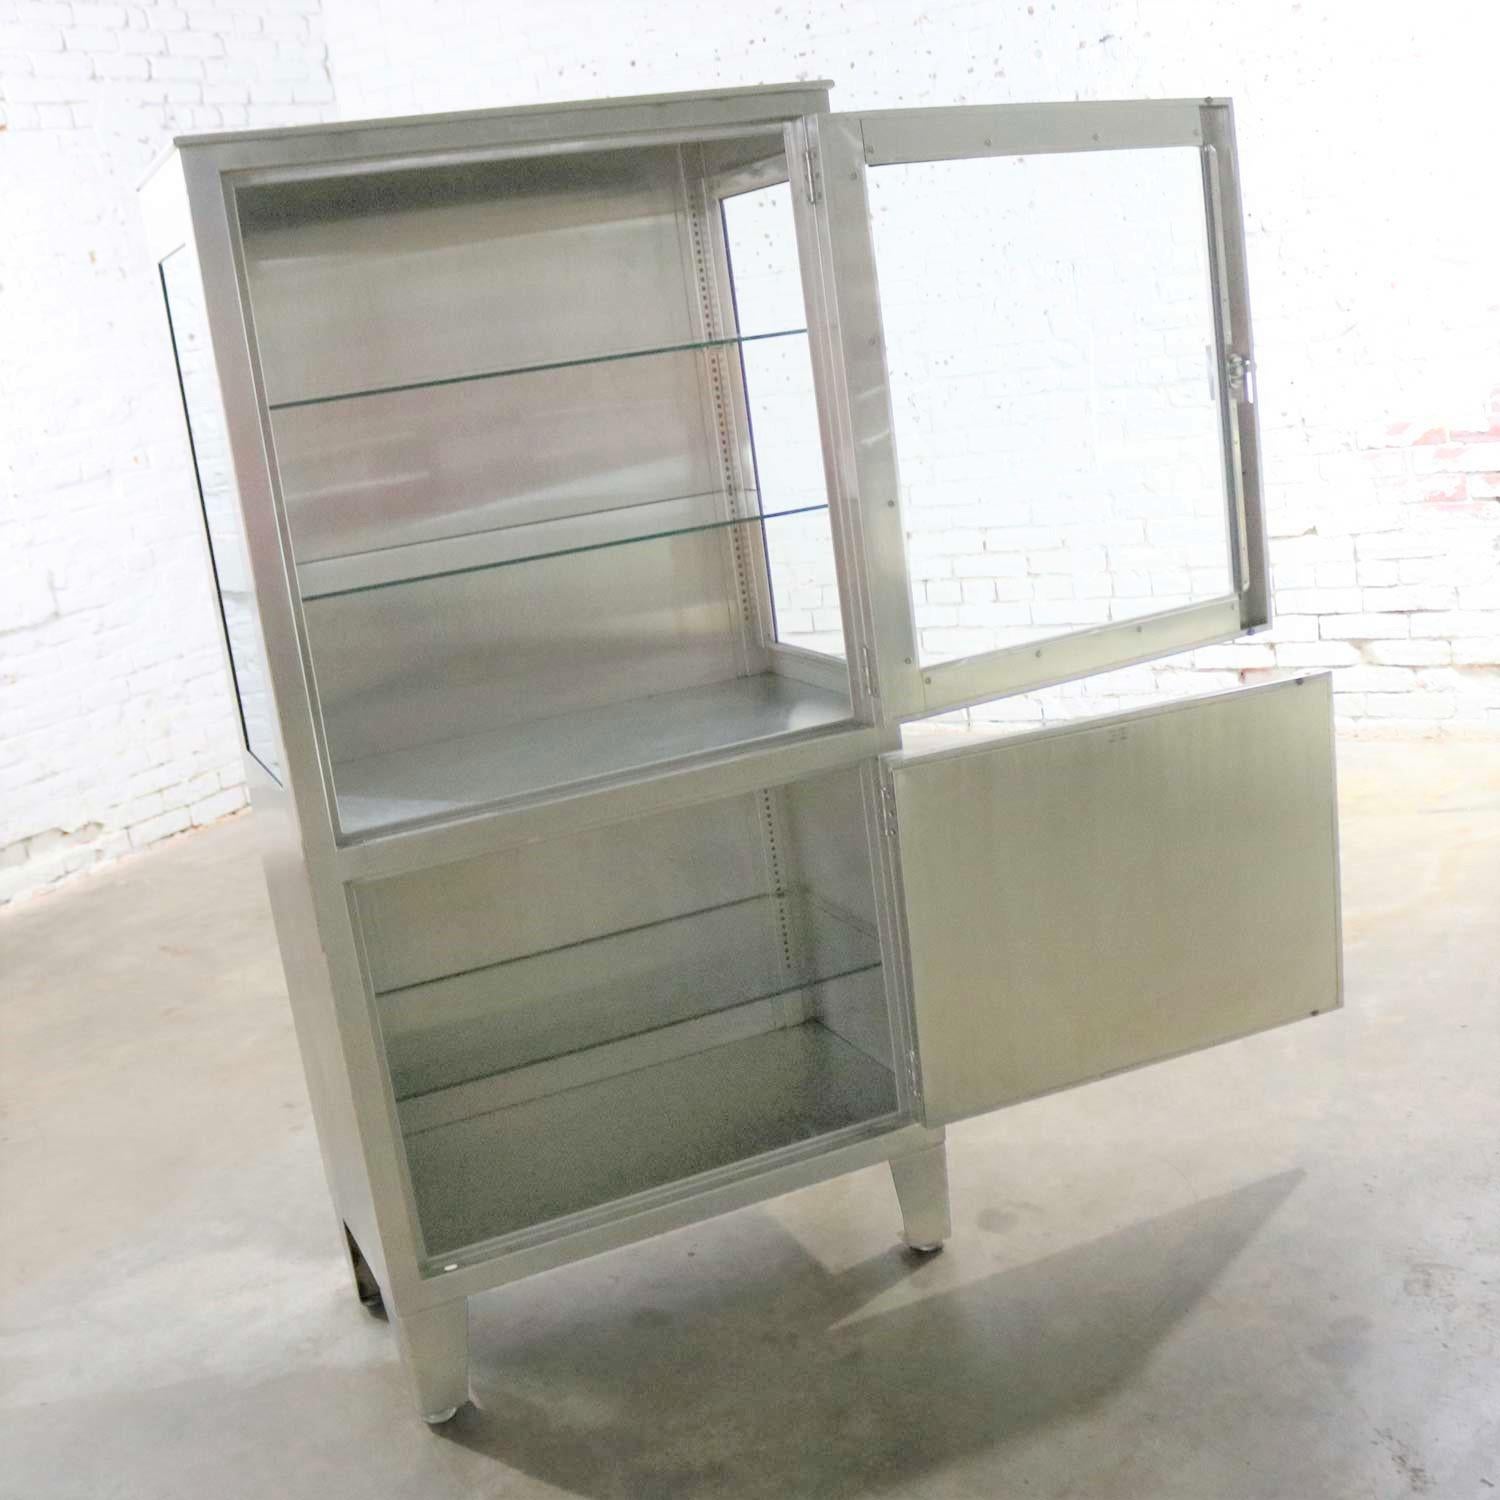 Vintage Petite Stainless Steel Industrial or Medical Display Storage Cabinet PR 1